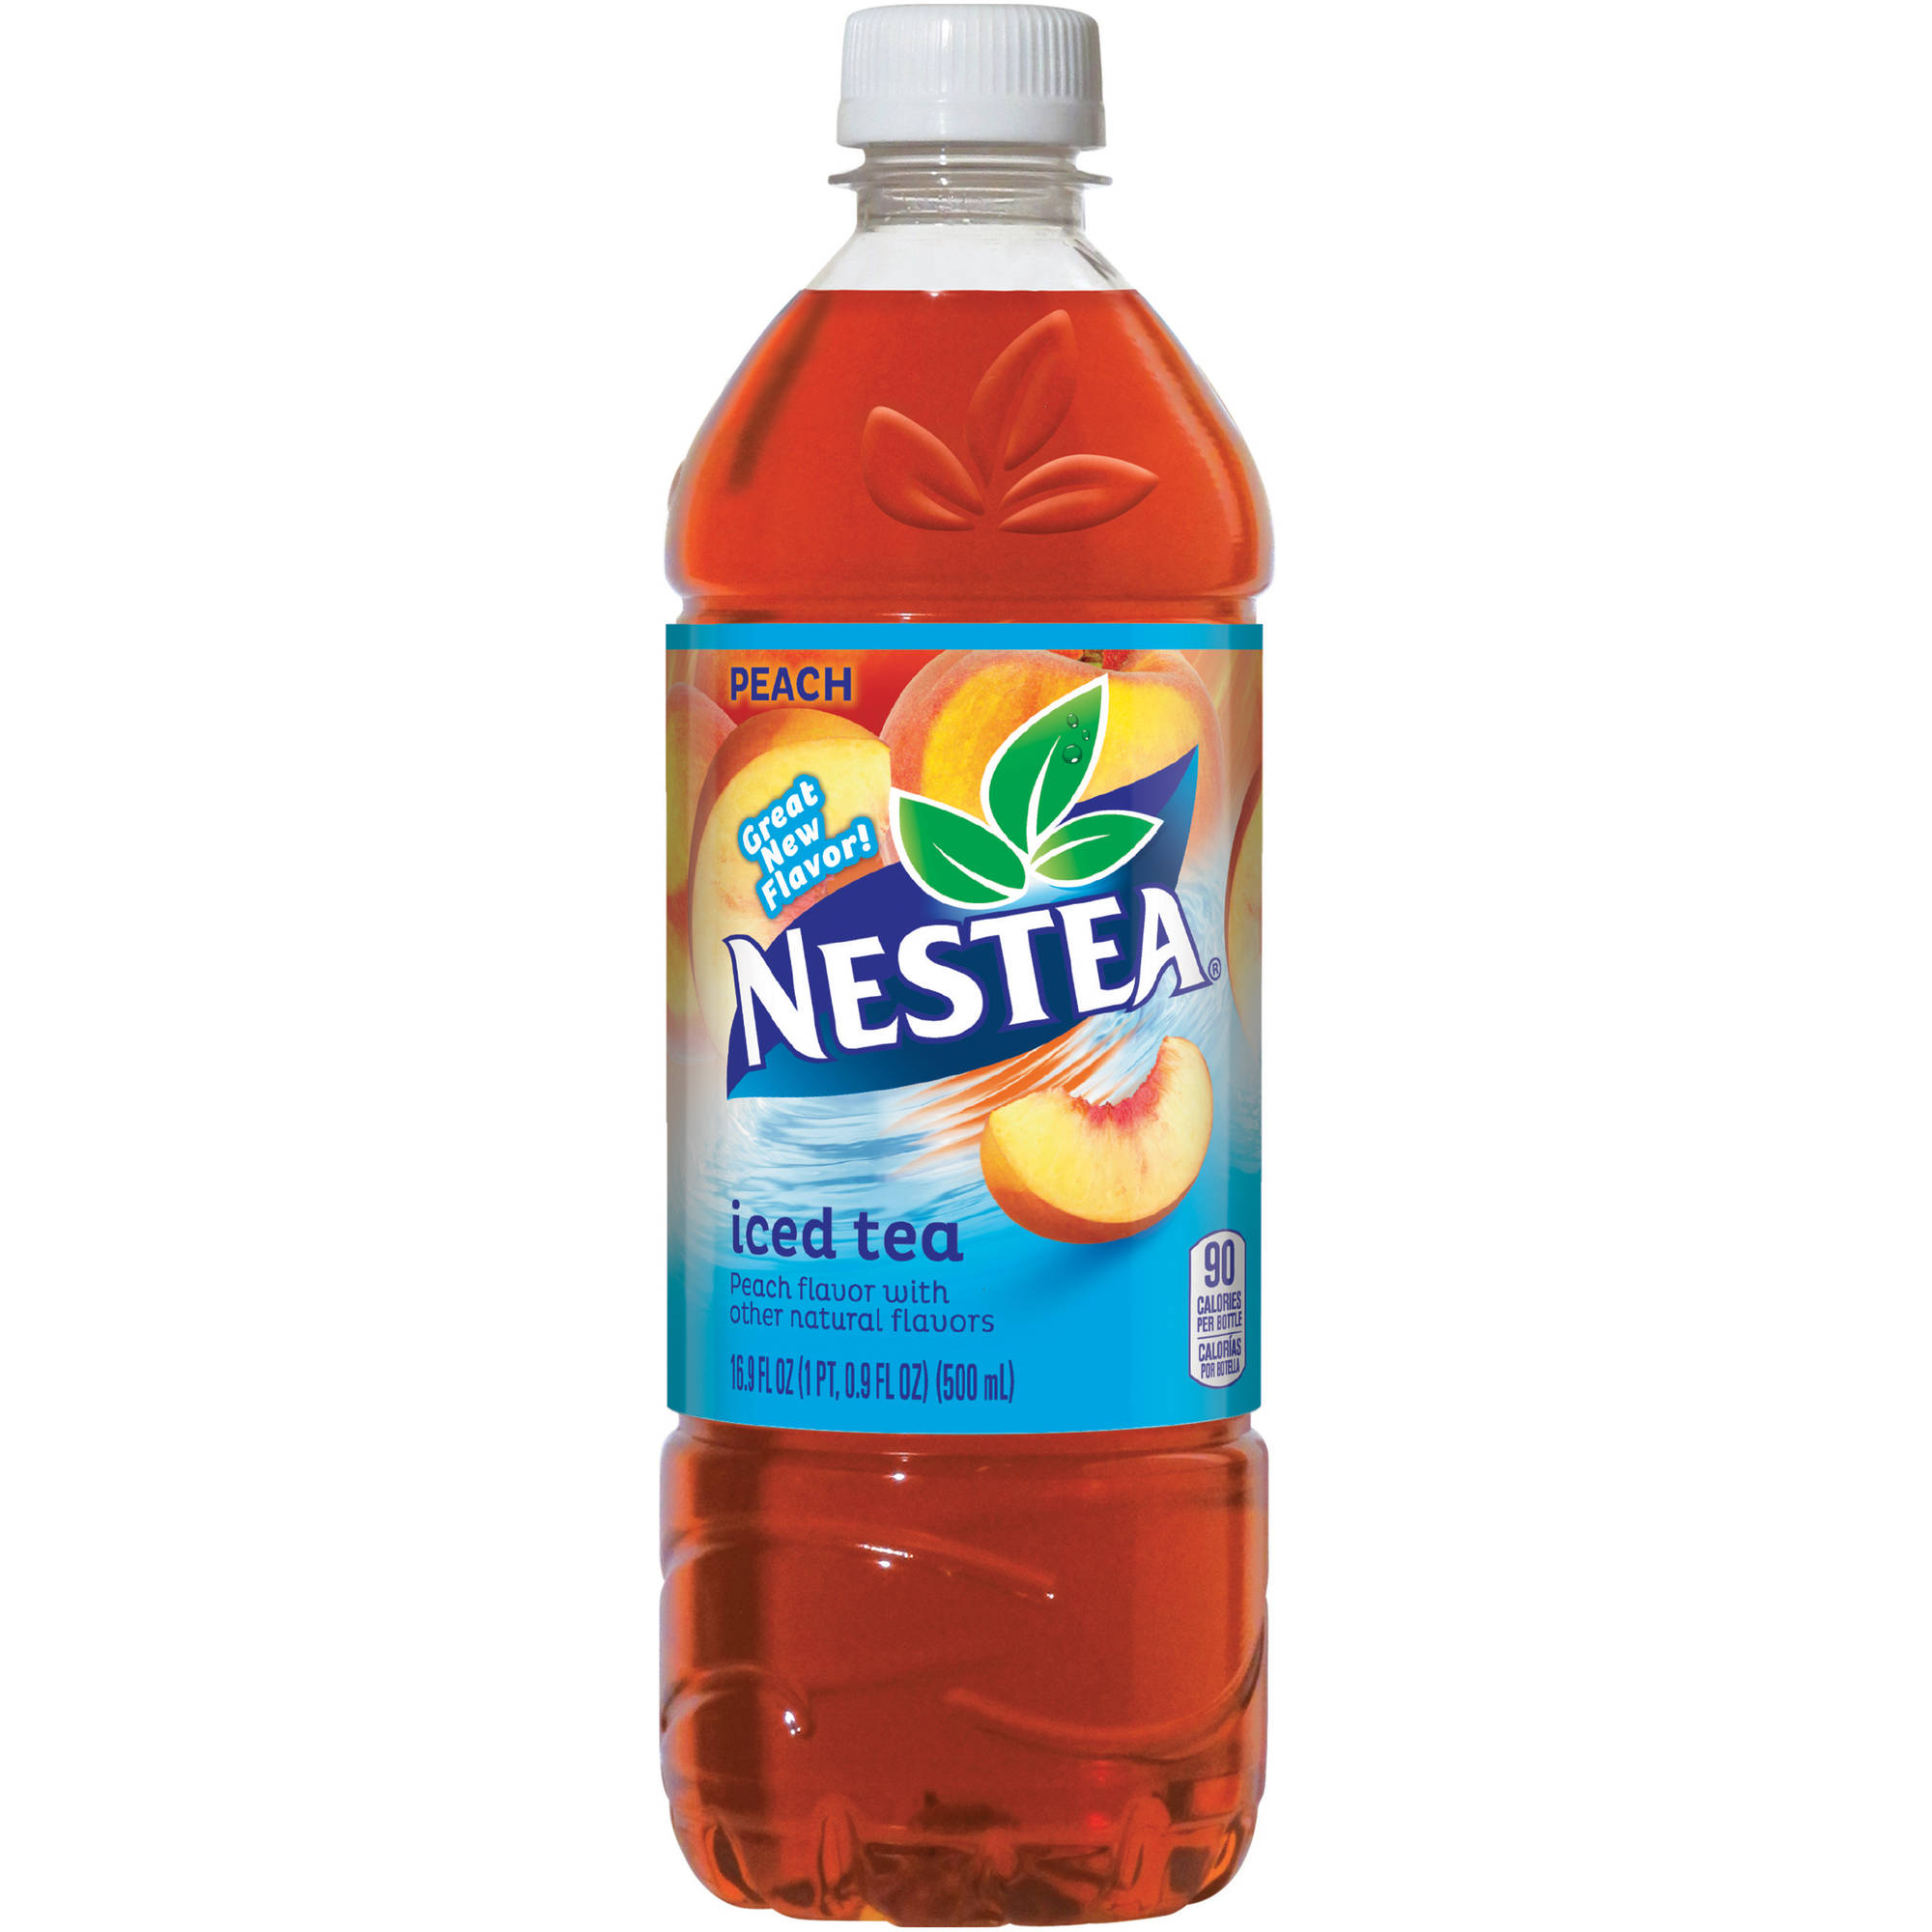 Nestea Peach Iced Tea 16.9 fl oz 24 pack - Walmart.com - Walmart.com